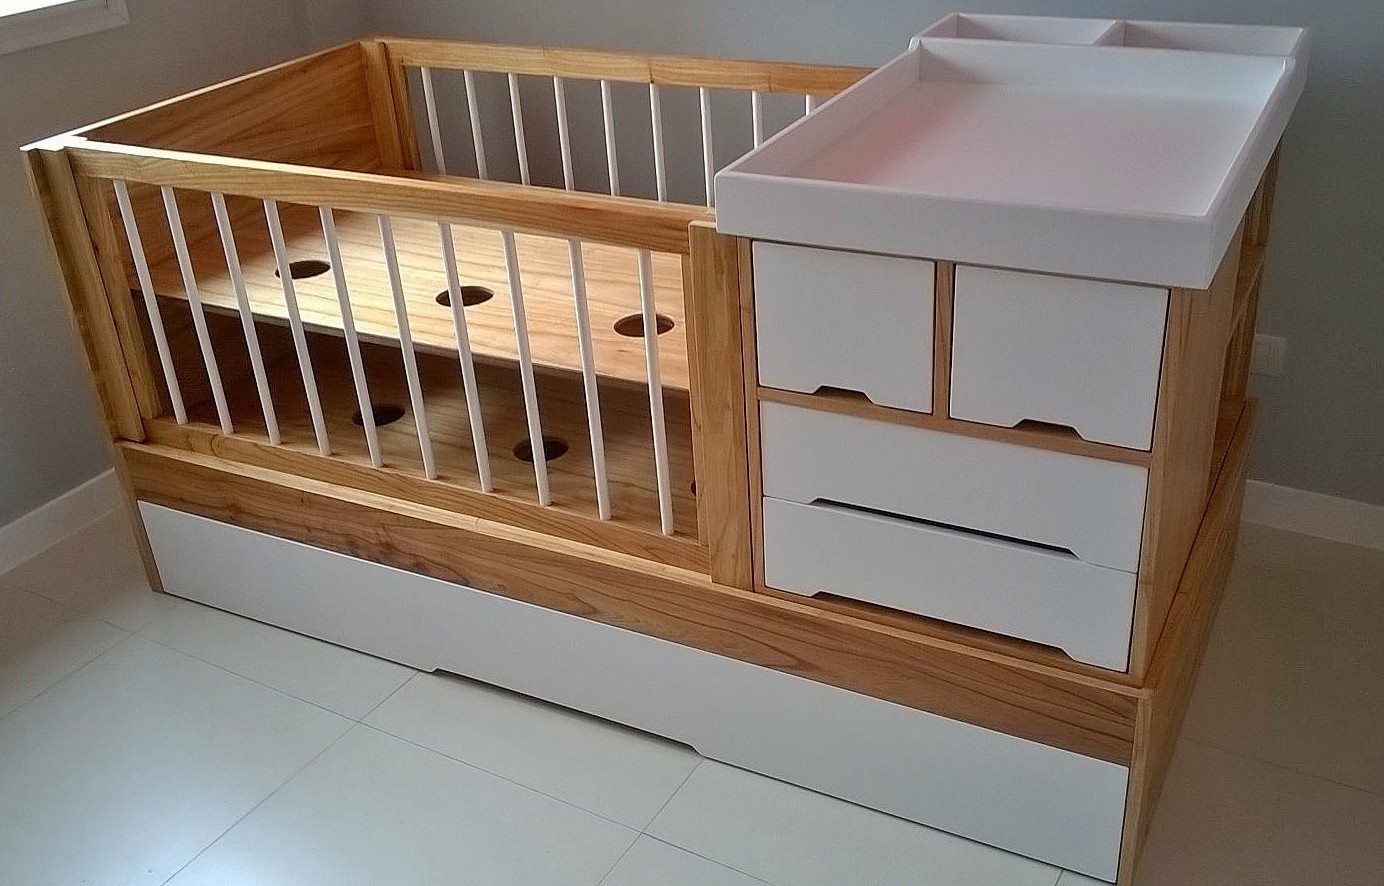 Muebles escandinavos, möbele möbele 嬰兒房/兒童房 衣櫥與衣櫃